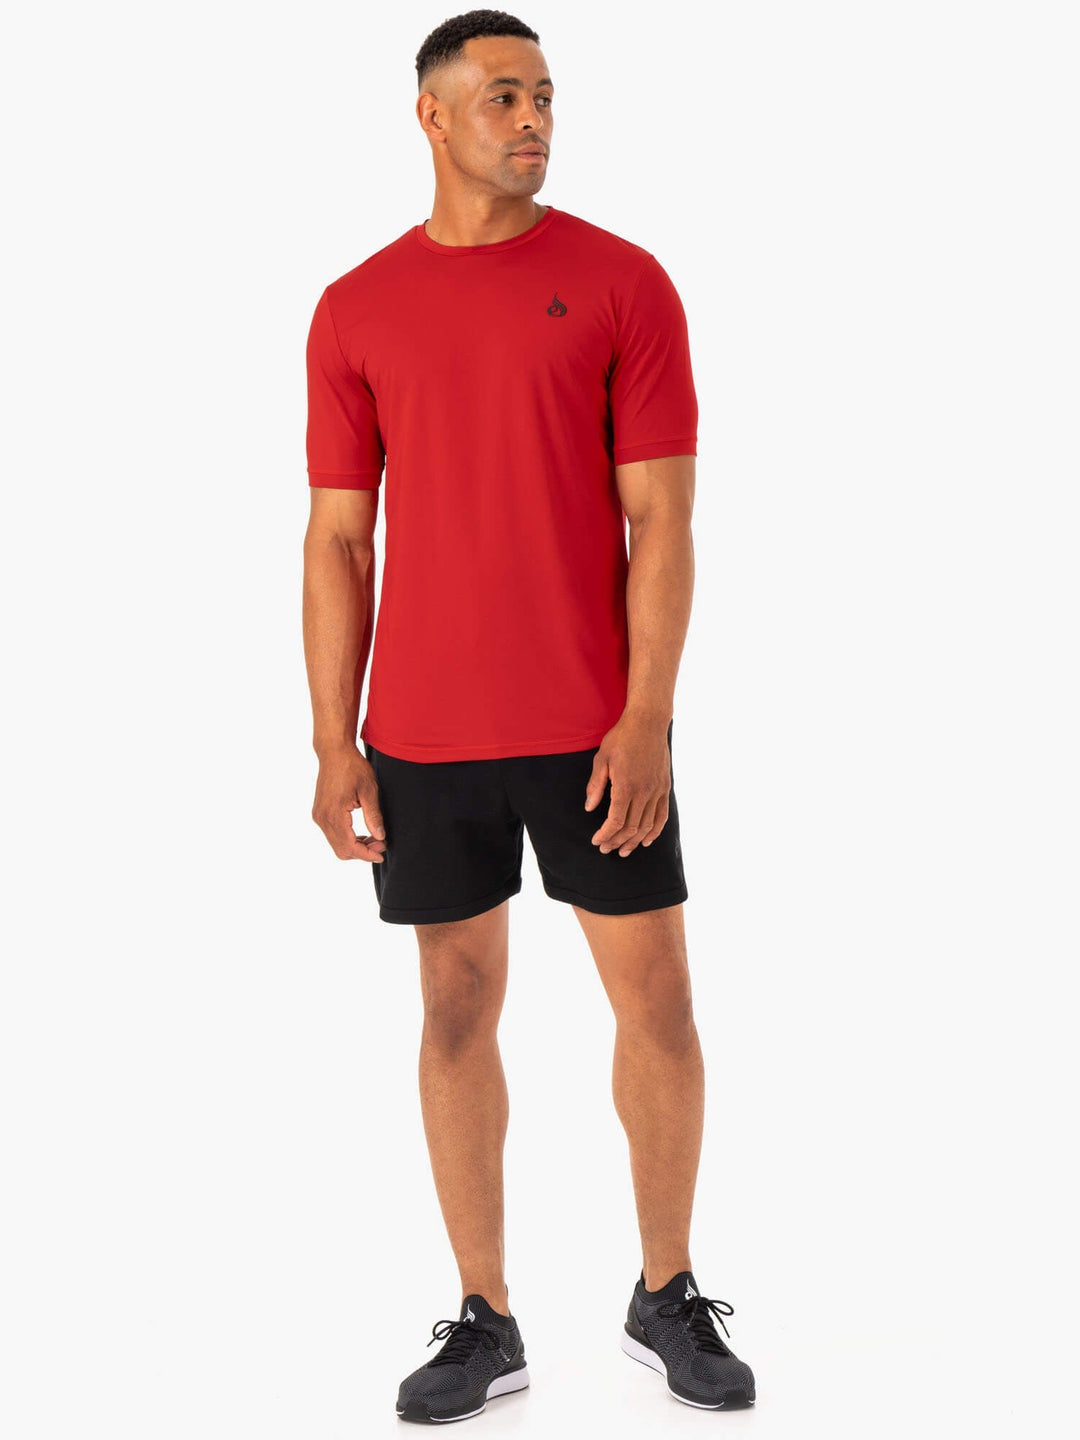 Optimal Mesh T-Shirt - Red Clothing Ryderwear 